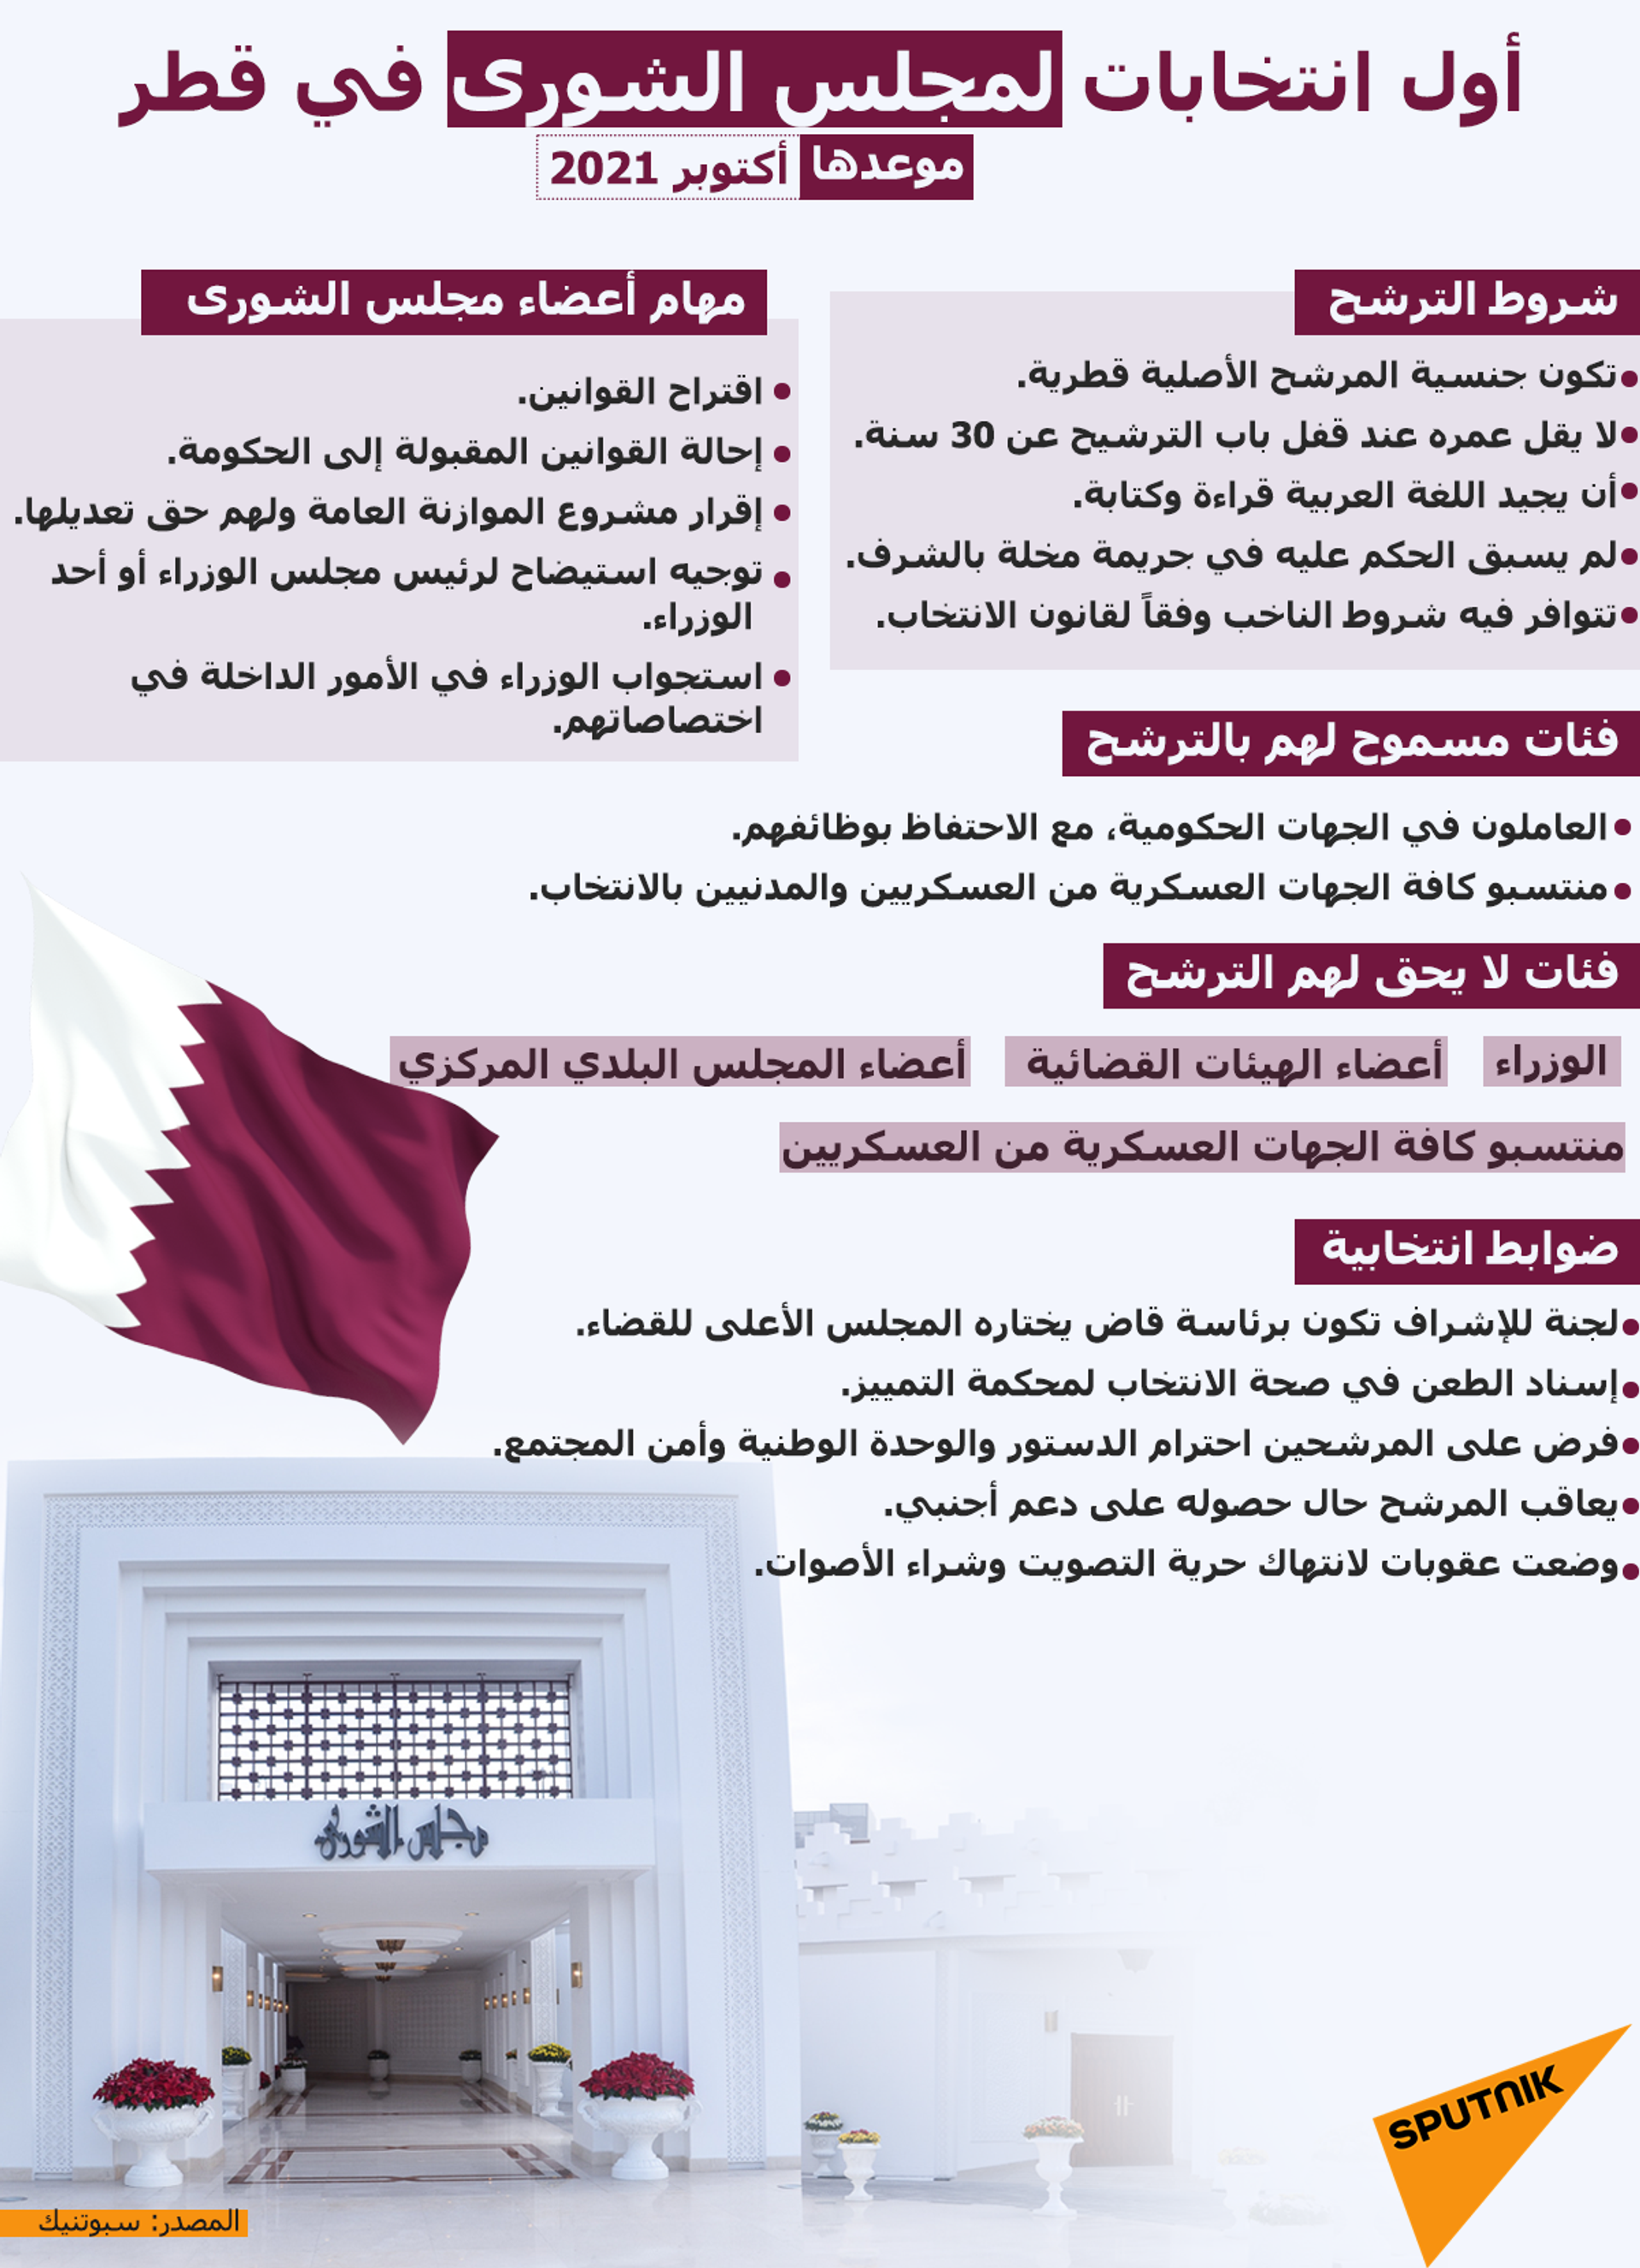 قطر توافق على زيادة نسبة تملّك غير القطريين في رأس مال عدد من البنوك - سبوتنيك عربي, 1920, 18.08.2021